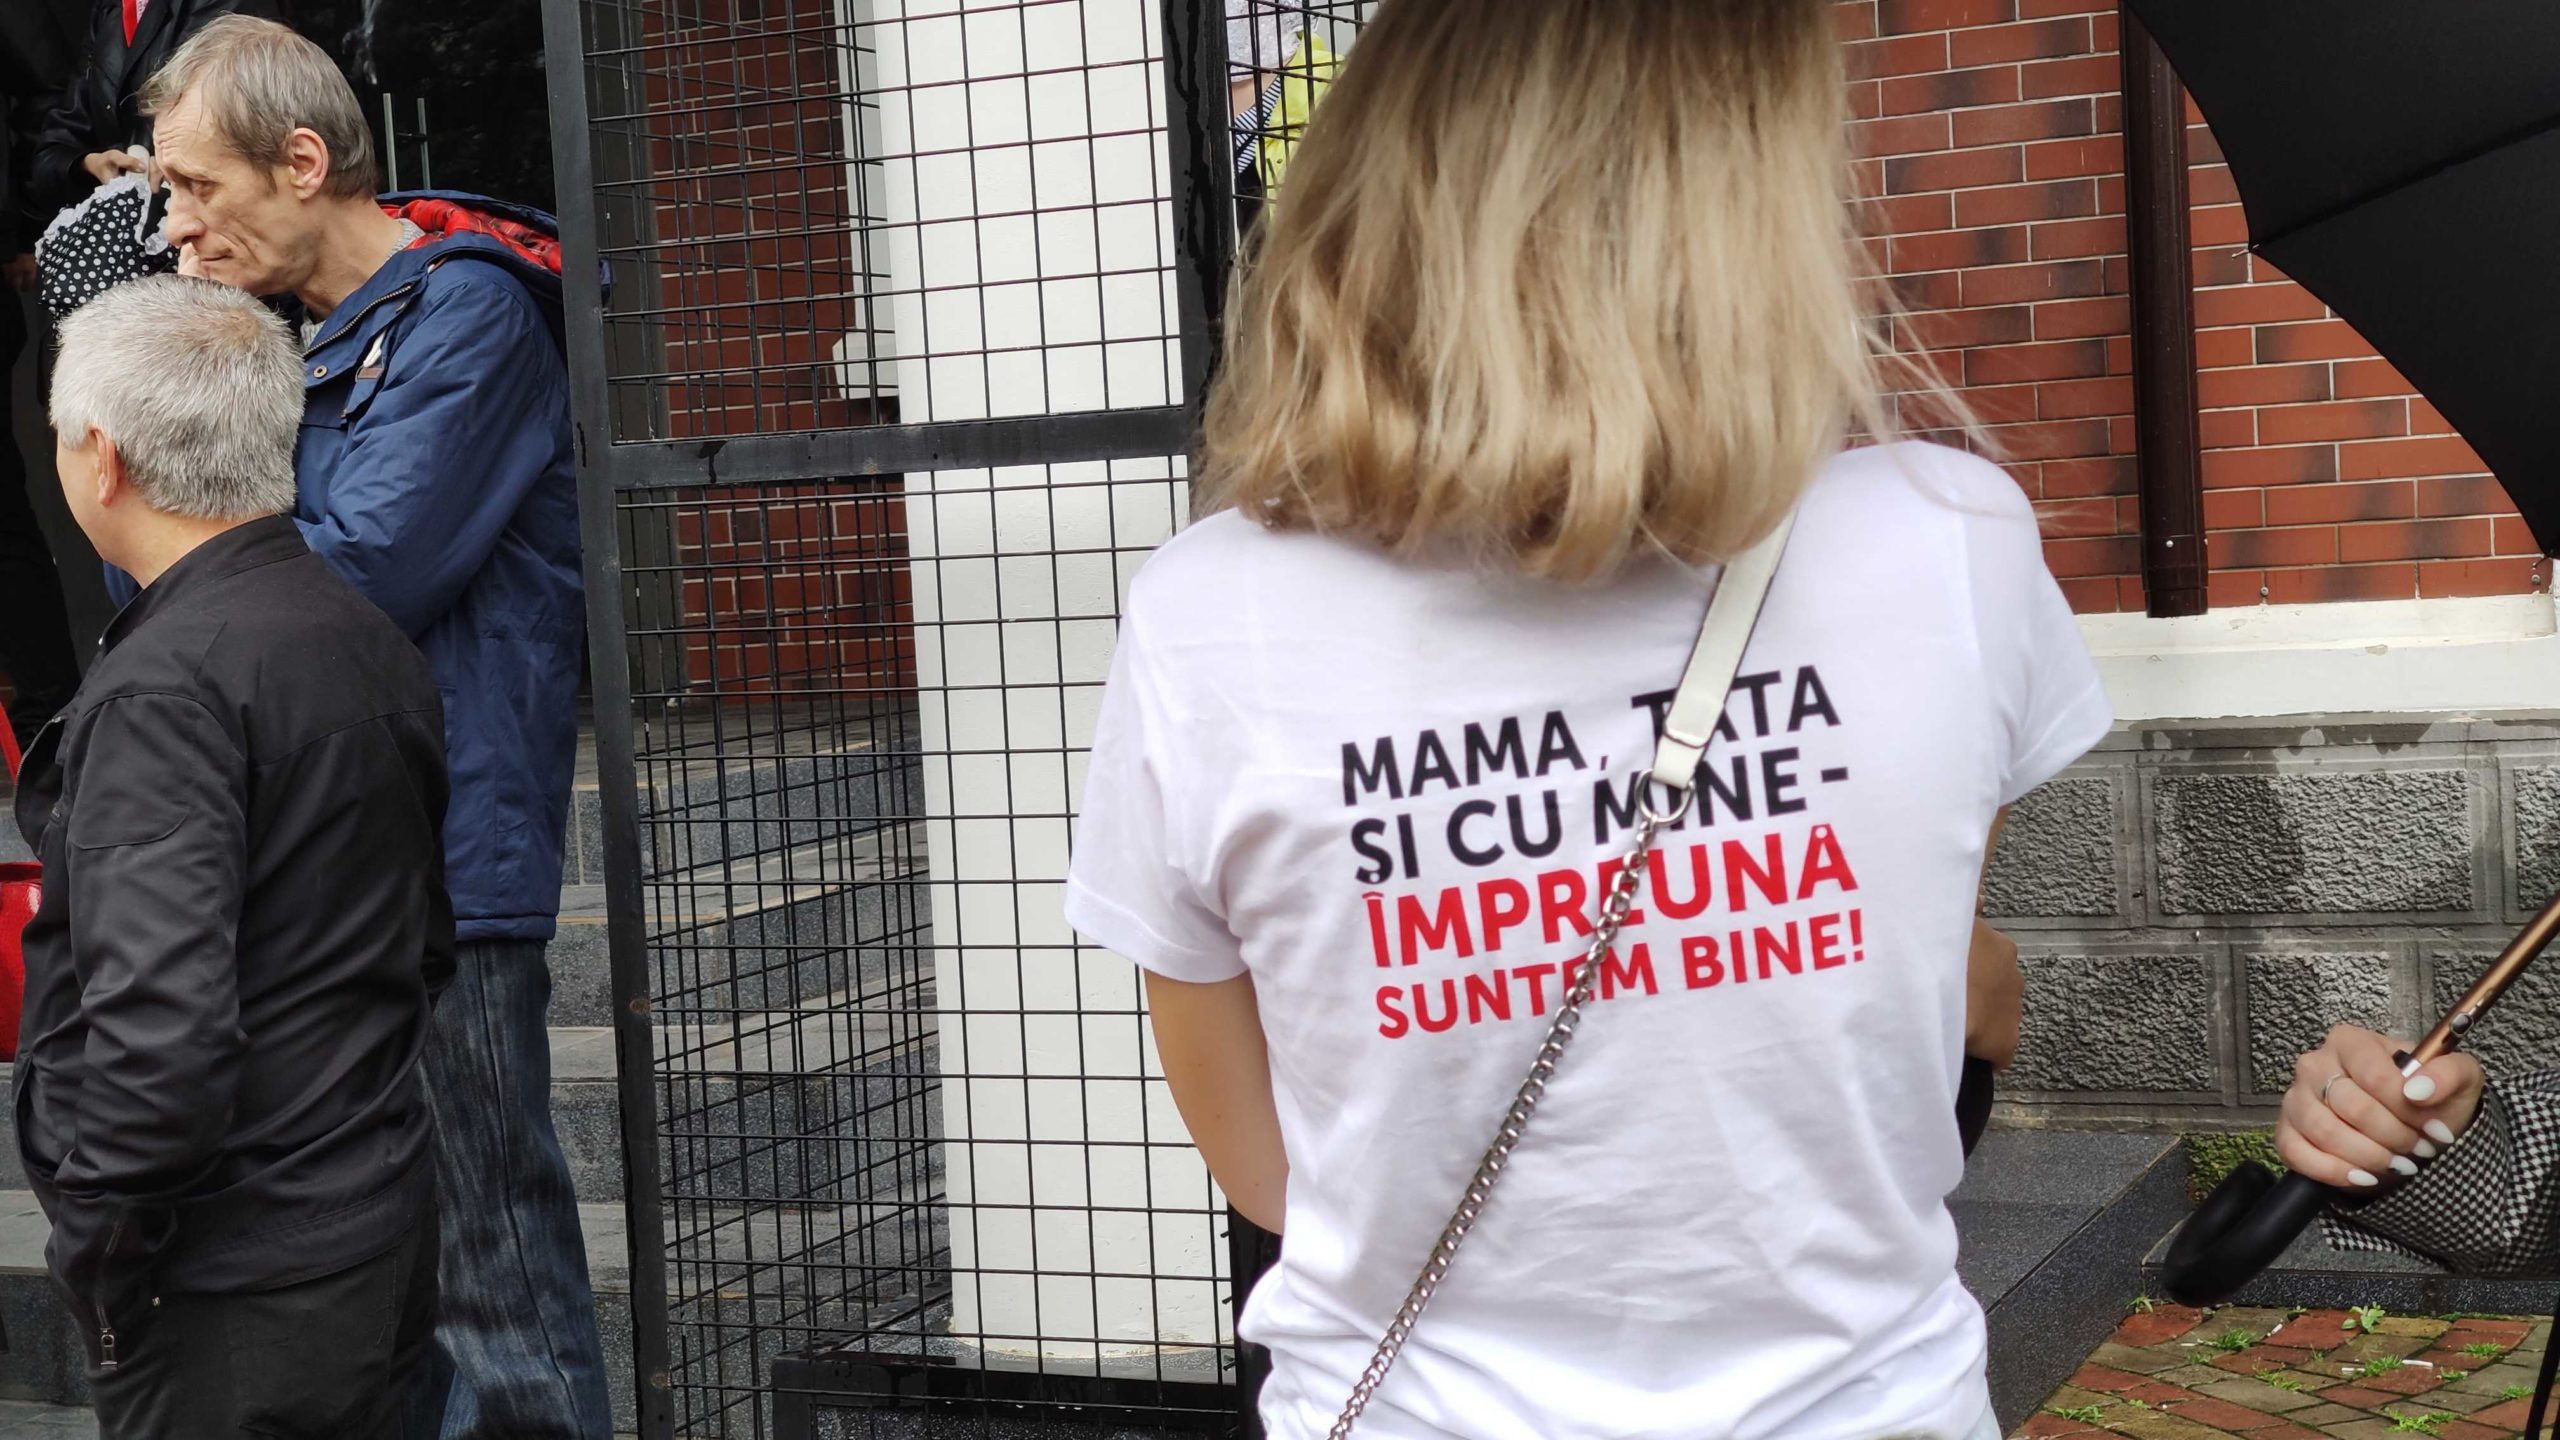 В Бельцах не состоялся марш в поддержку традиционной семьи. Что случилось? (ФОТО)